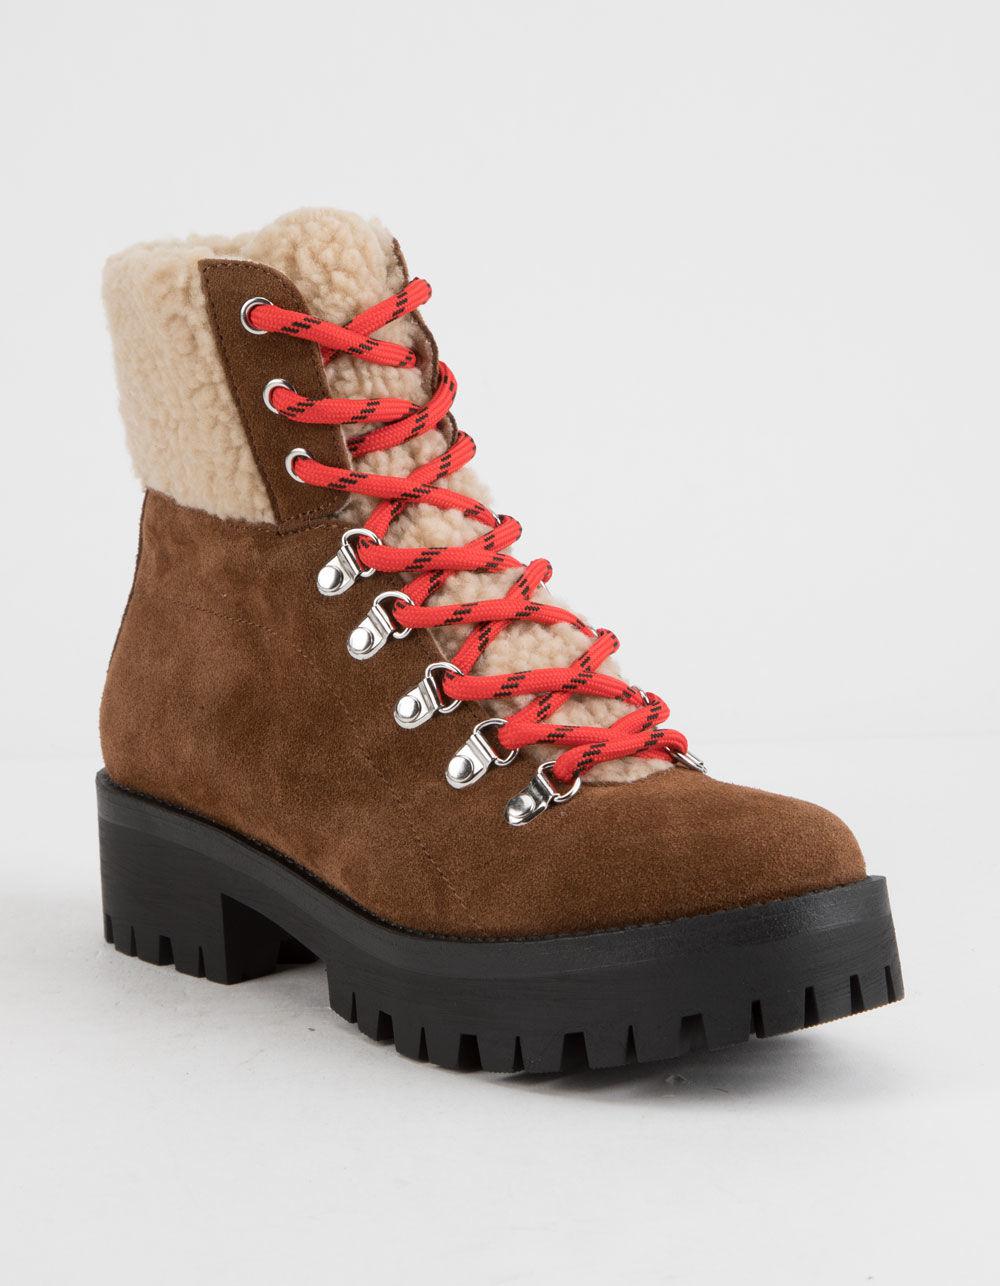 steve madden women's hiking boots